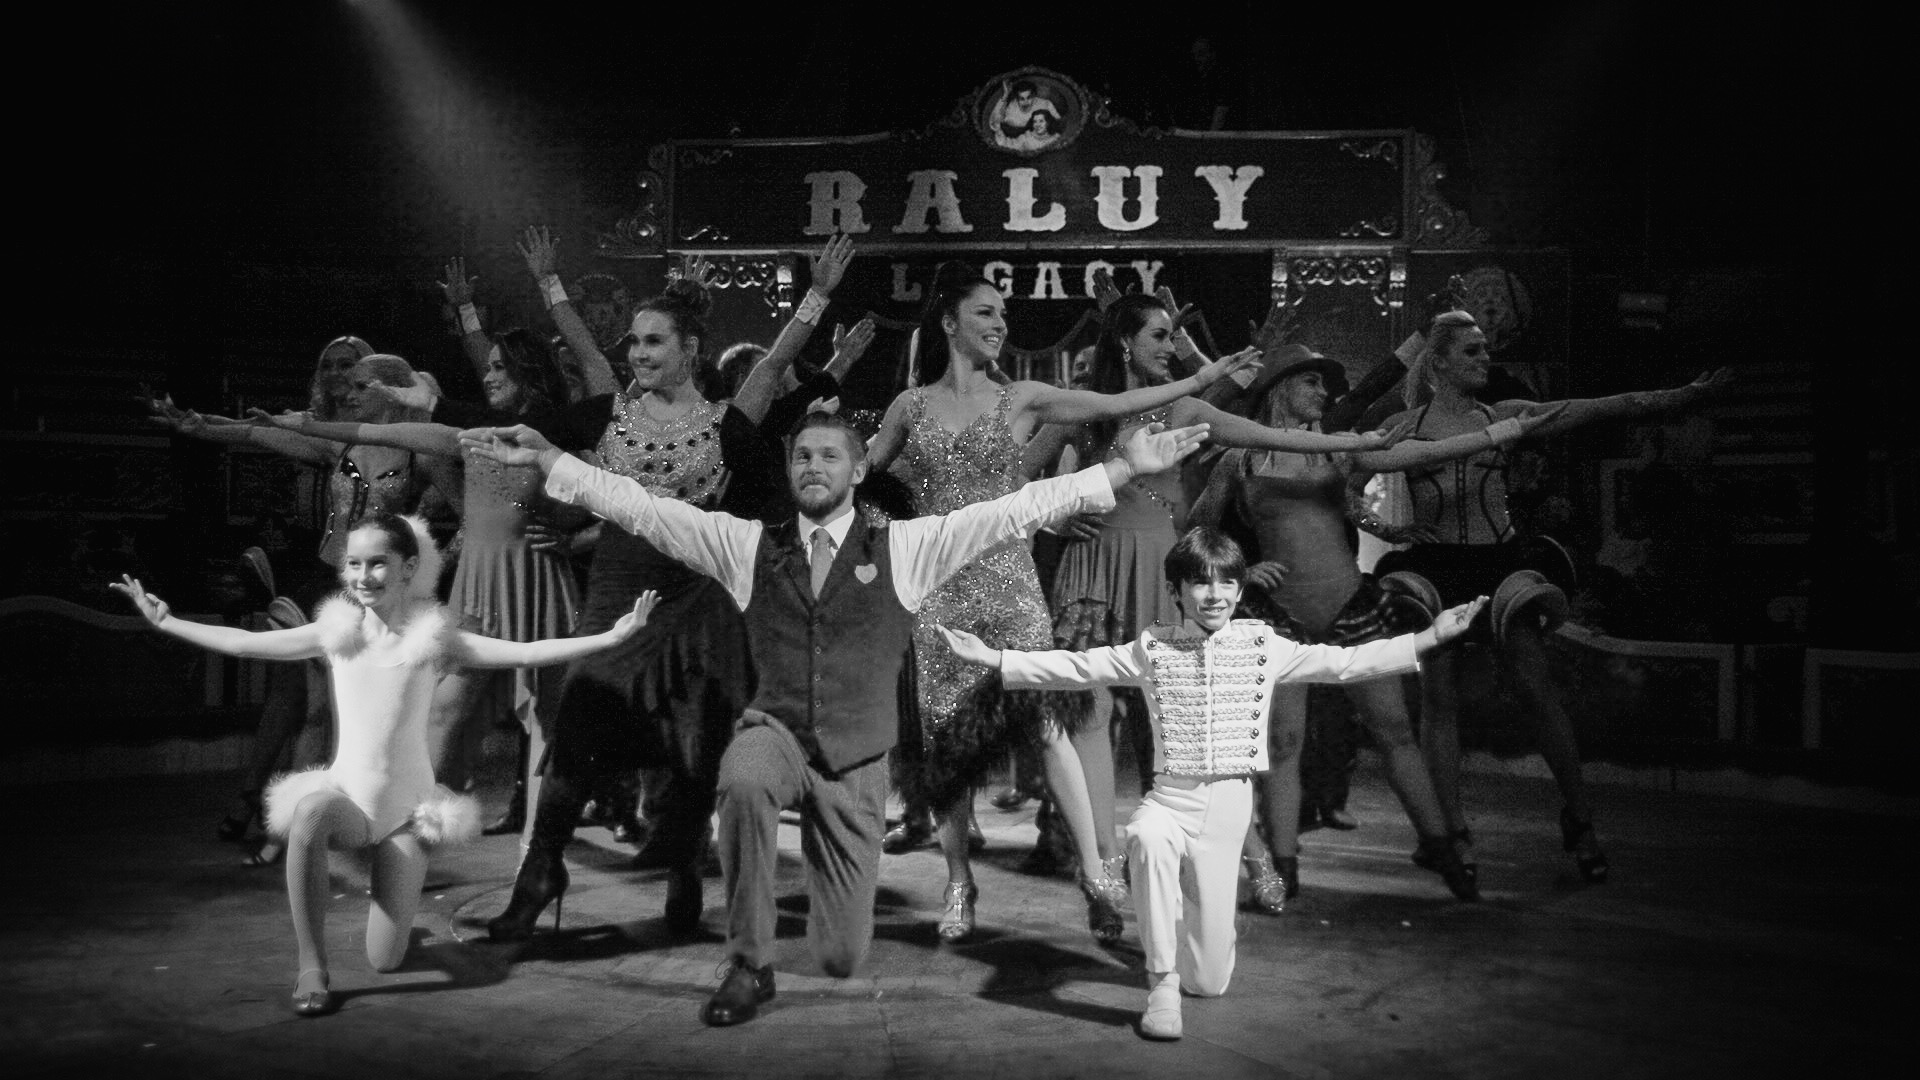 Circo Raluy Legacy, hasta el 3 de marzo en Barcelona ©Andrea Rodríguez